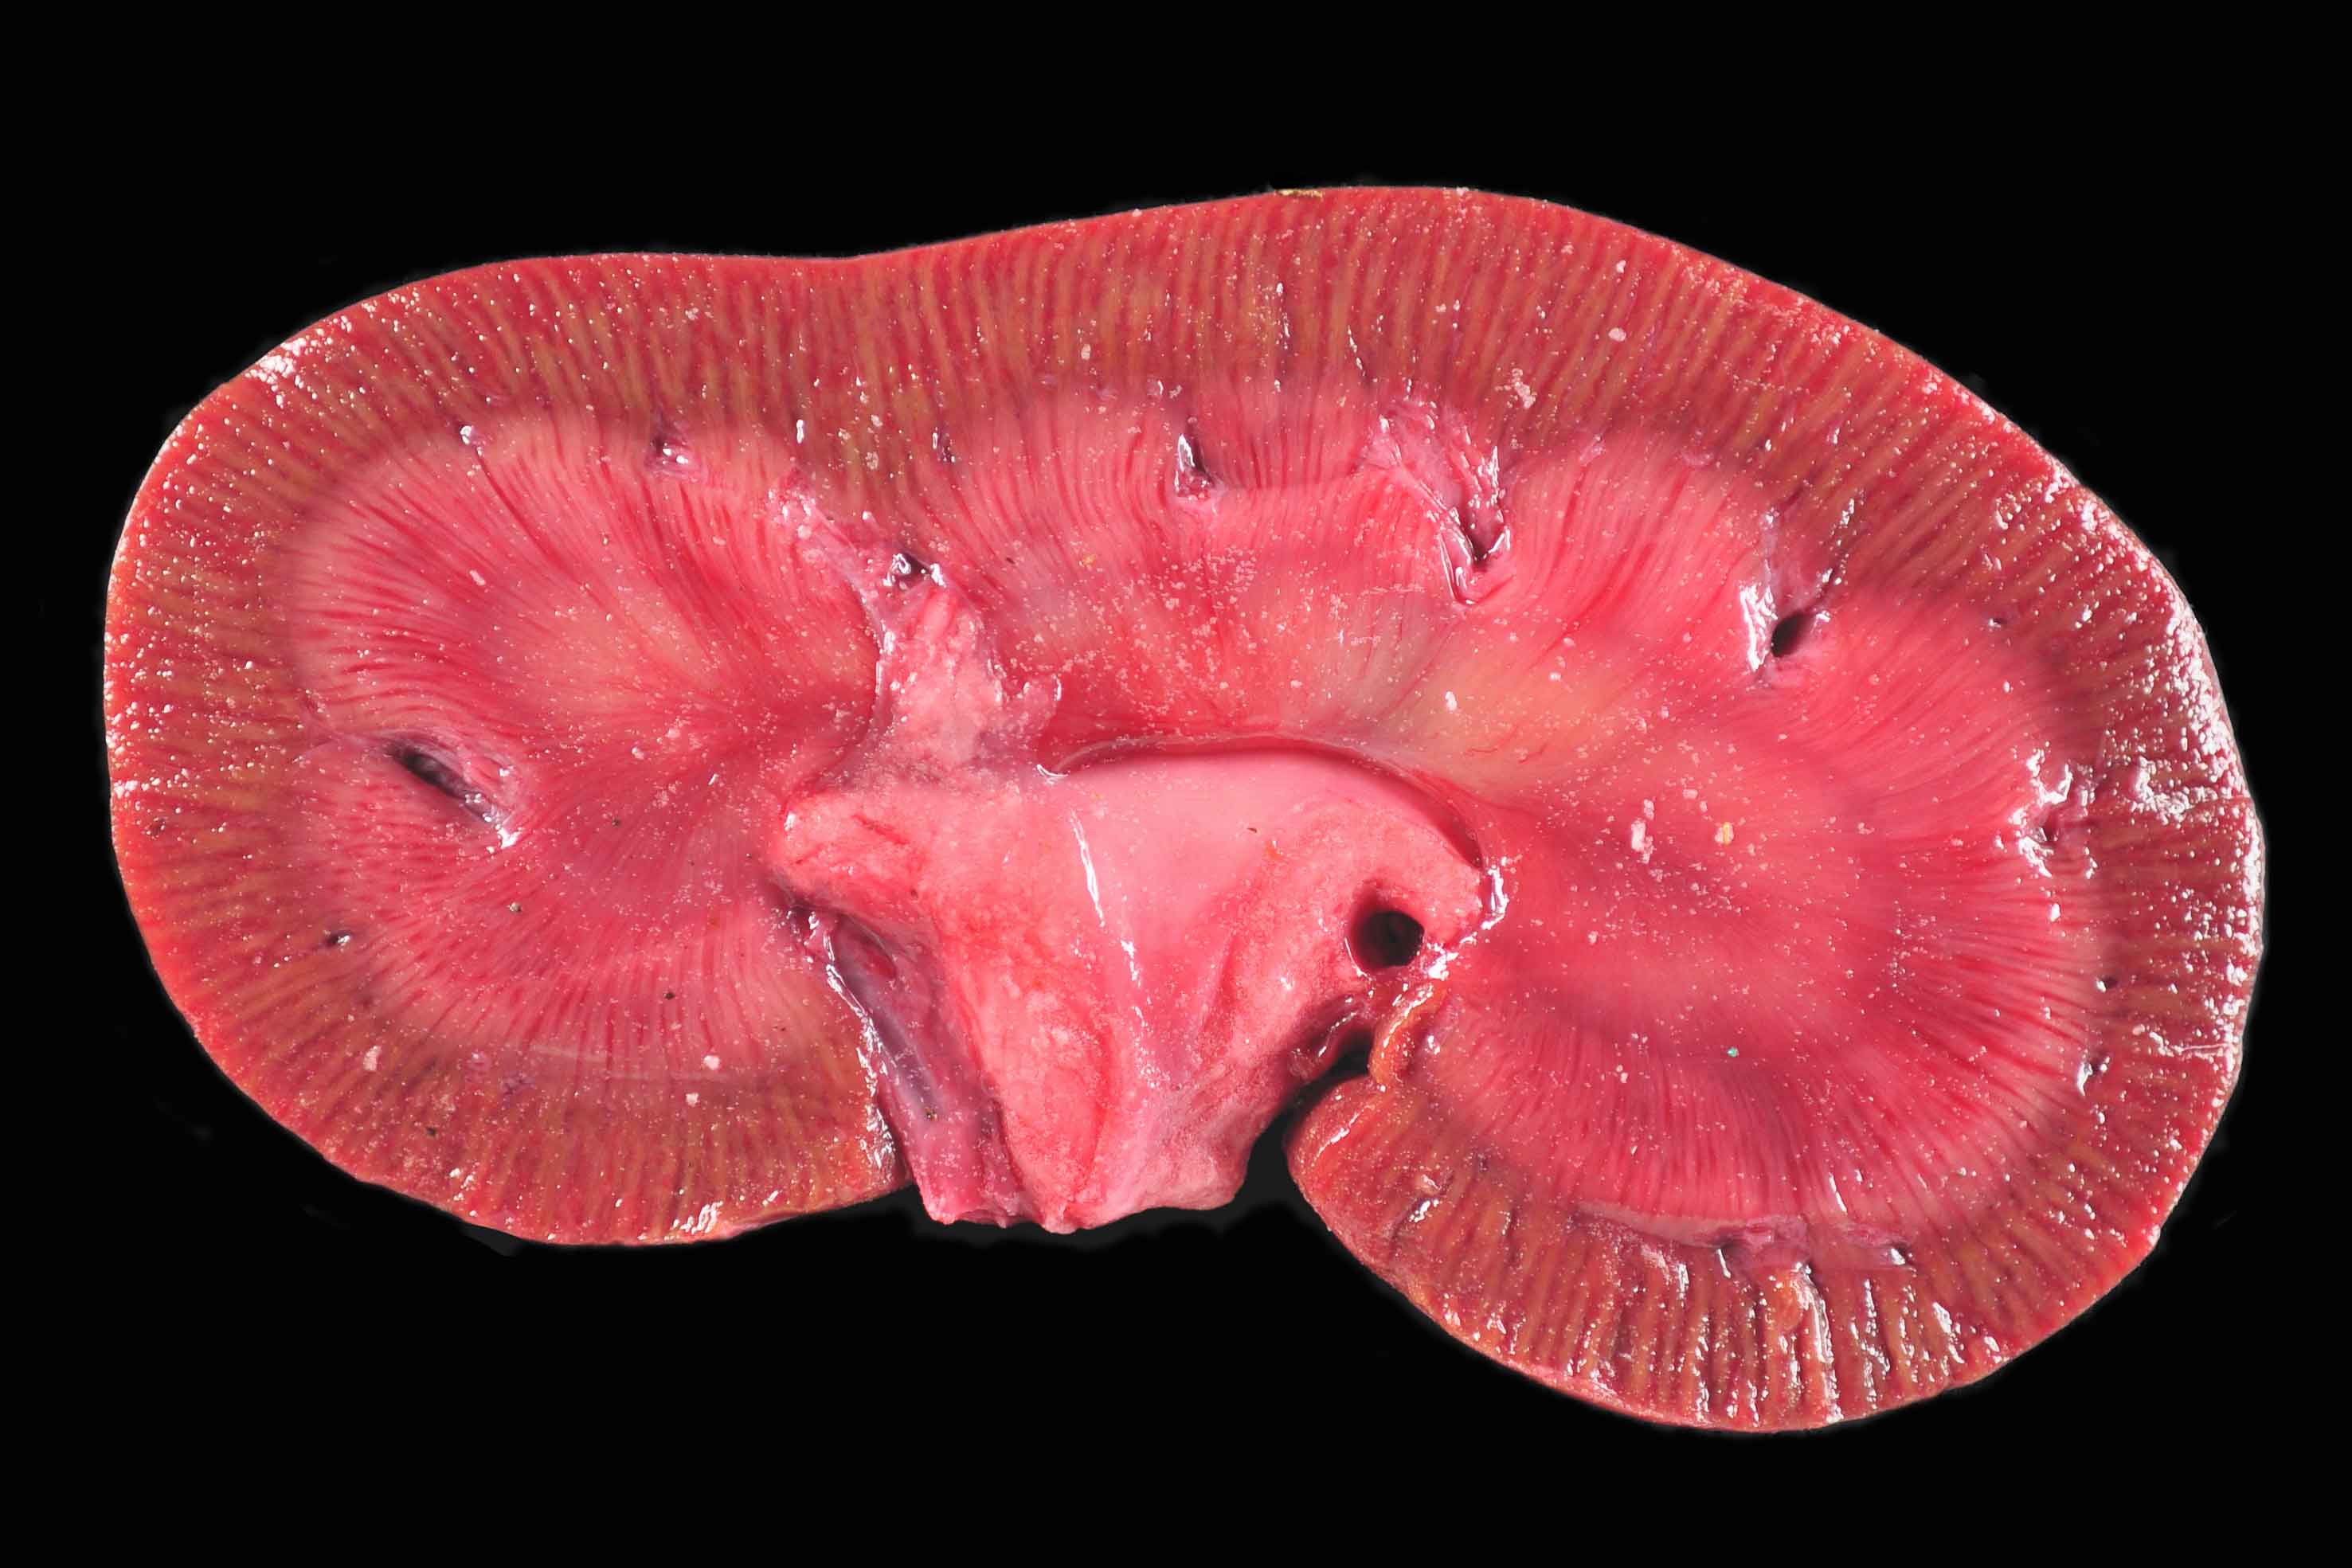 Bei allen untersuchten Tieren wurde eine ausgeprägte radiäre Streifung der Nierenrinde, welche sich bis in das Nierenmark ausweitete, aufgefunden.